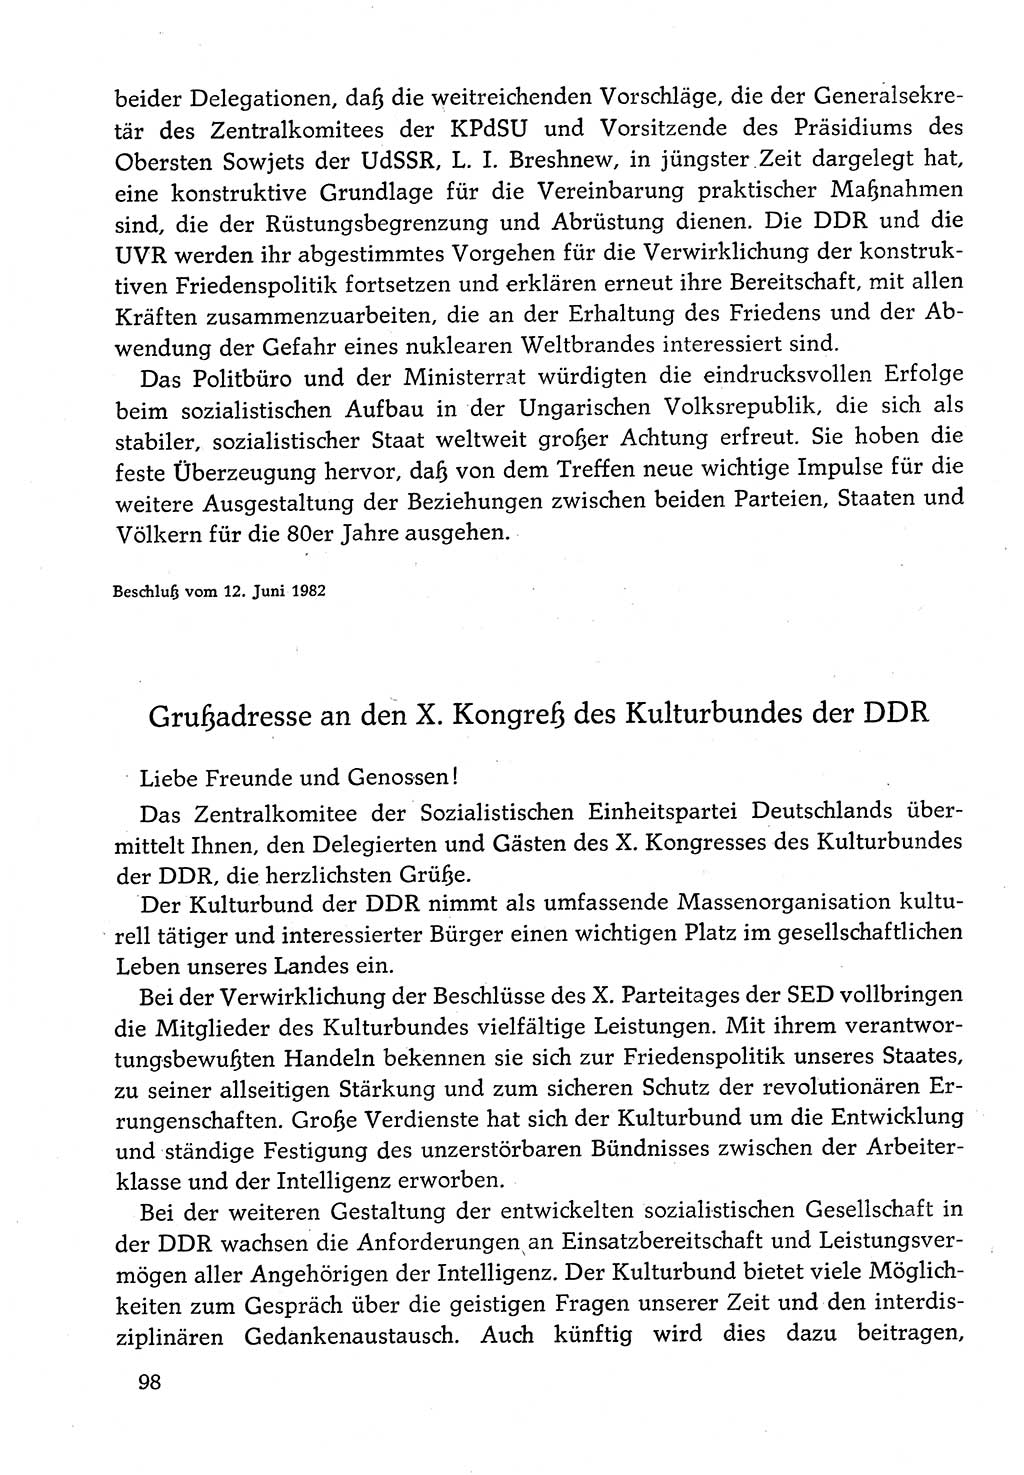 Dokumente der Sozialistischen Einheitspartei Deutschlands (SED) [Deutsche Demokratische Republik (DDR)] 1982-1983, Seite 98 (Dok. SED DDR 1982-1983, S. 98)